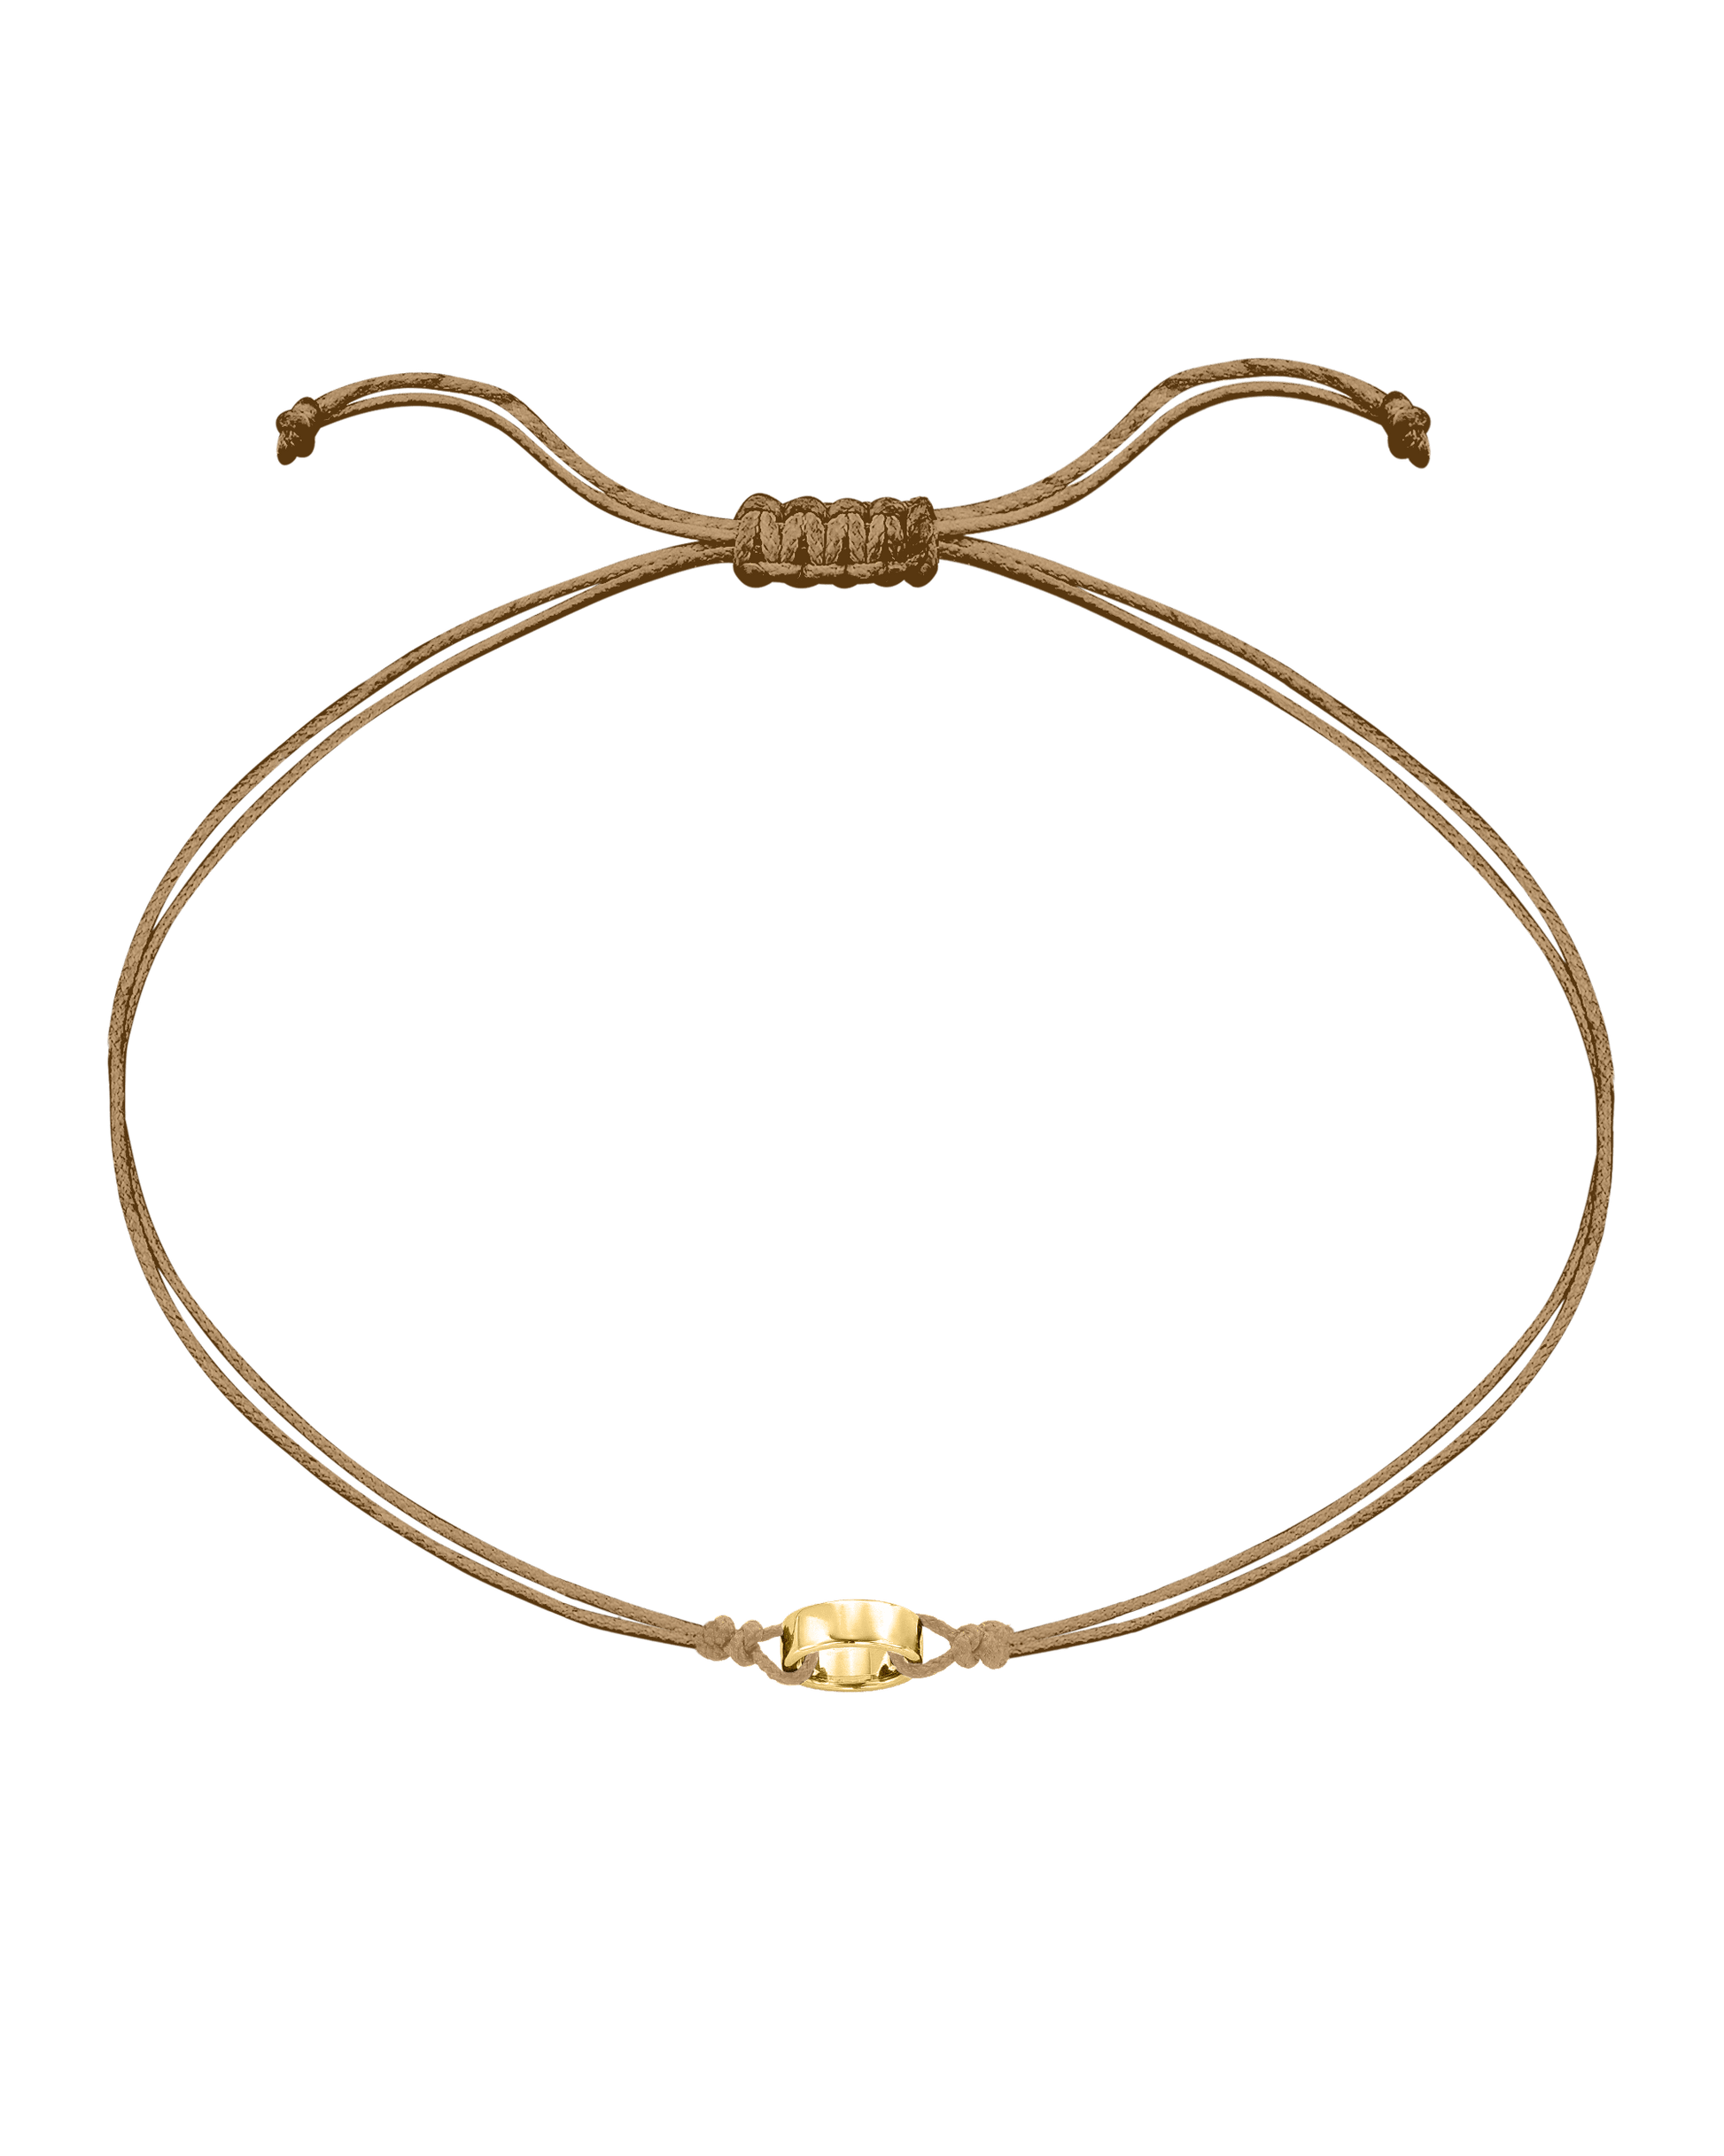 Engravable Links of Love - 18K Gold Vermeil Bracelets magal-dev 1 Camel 